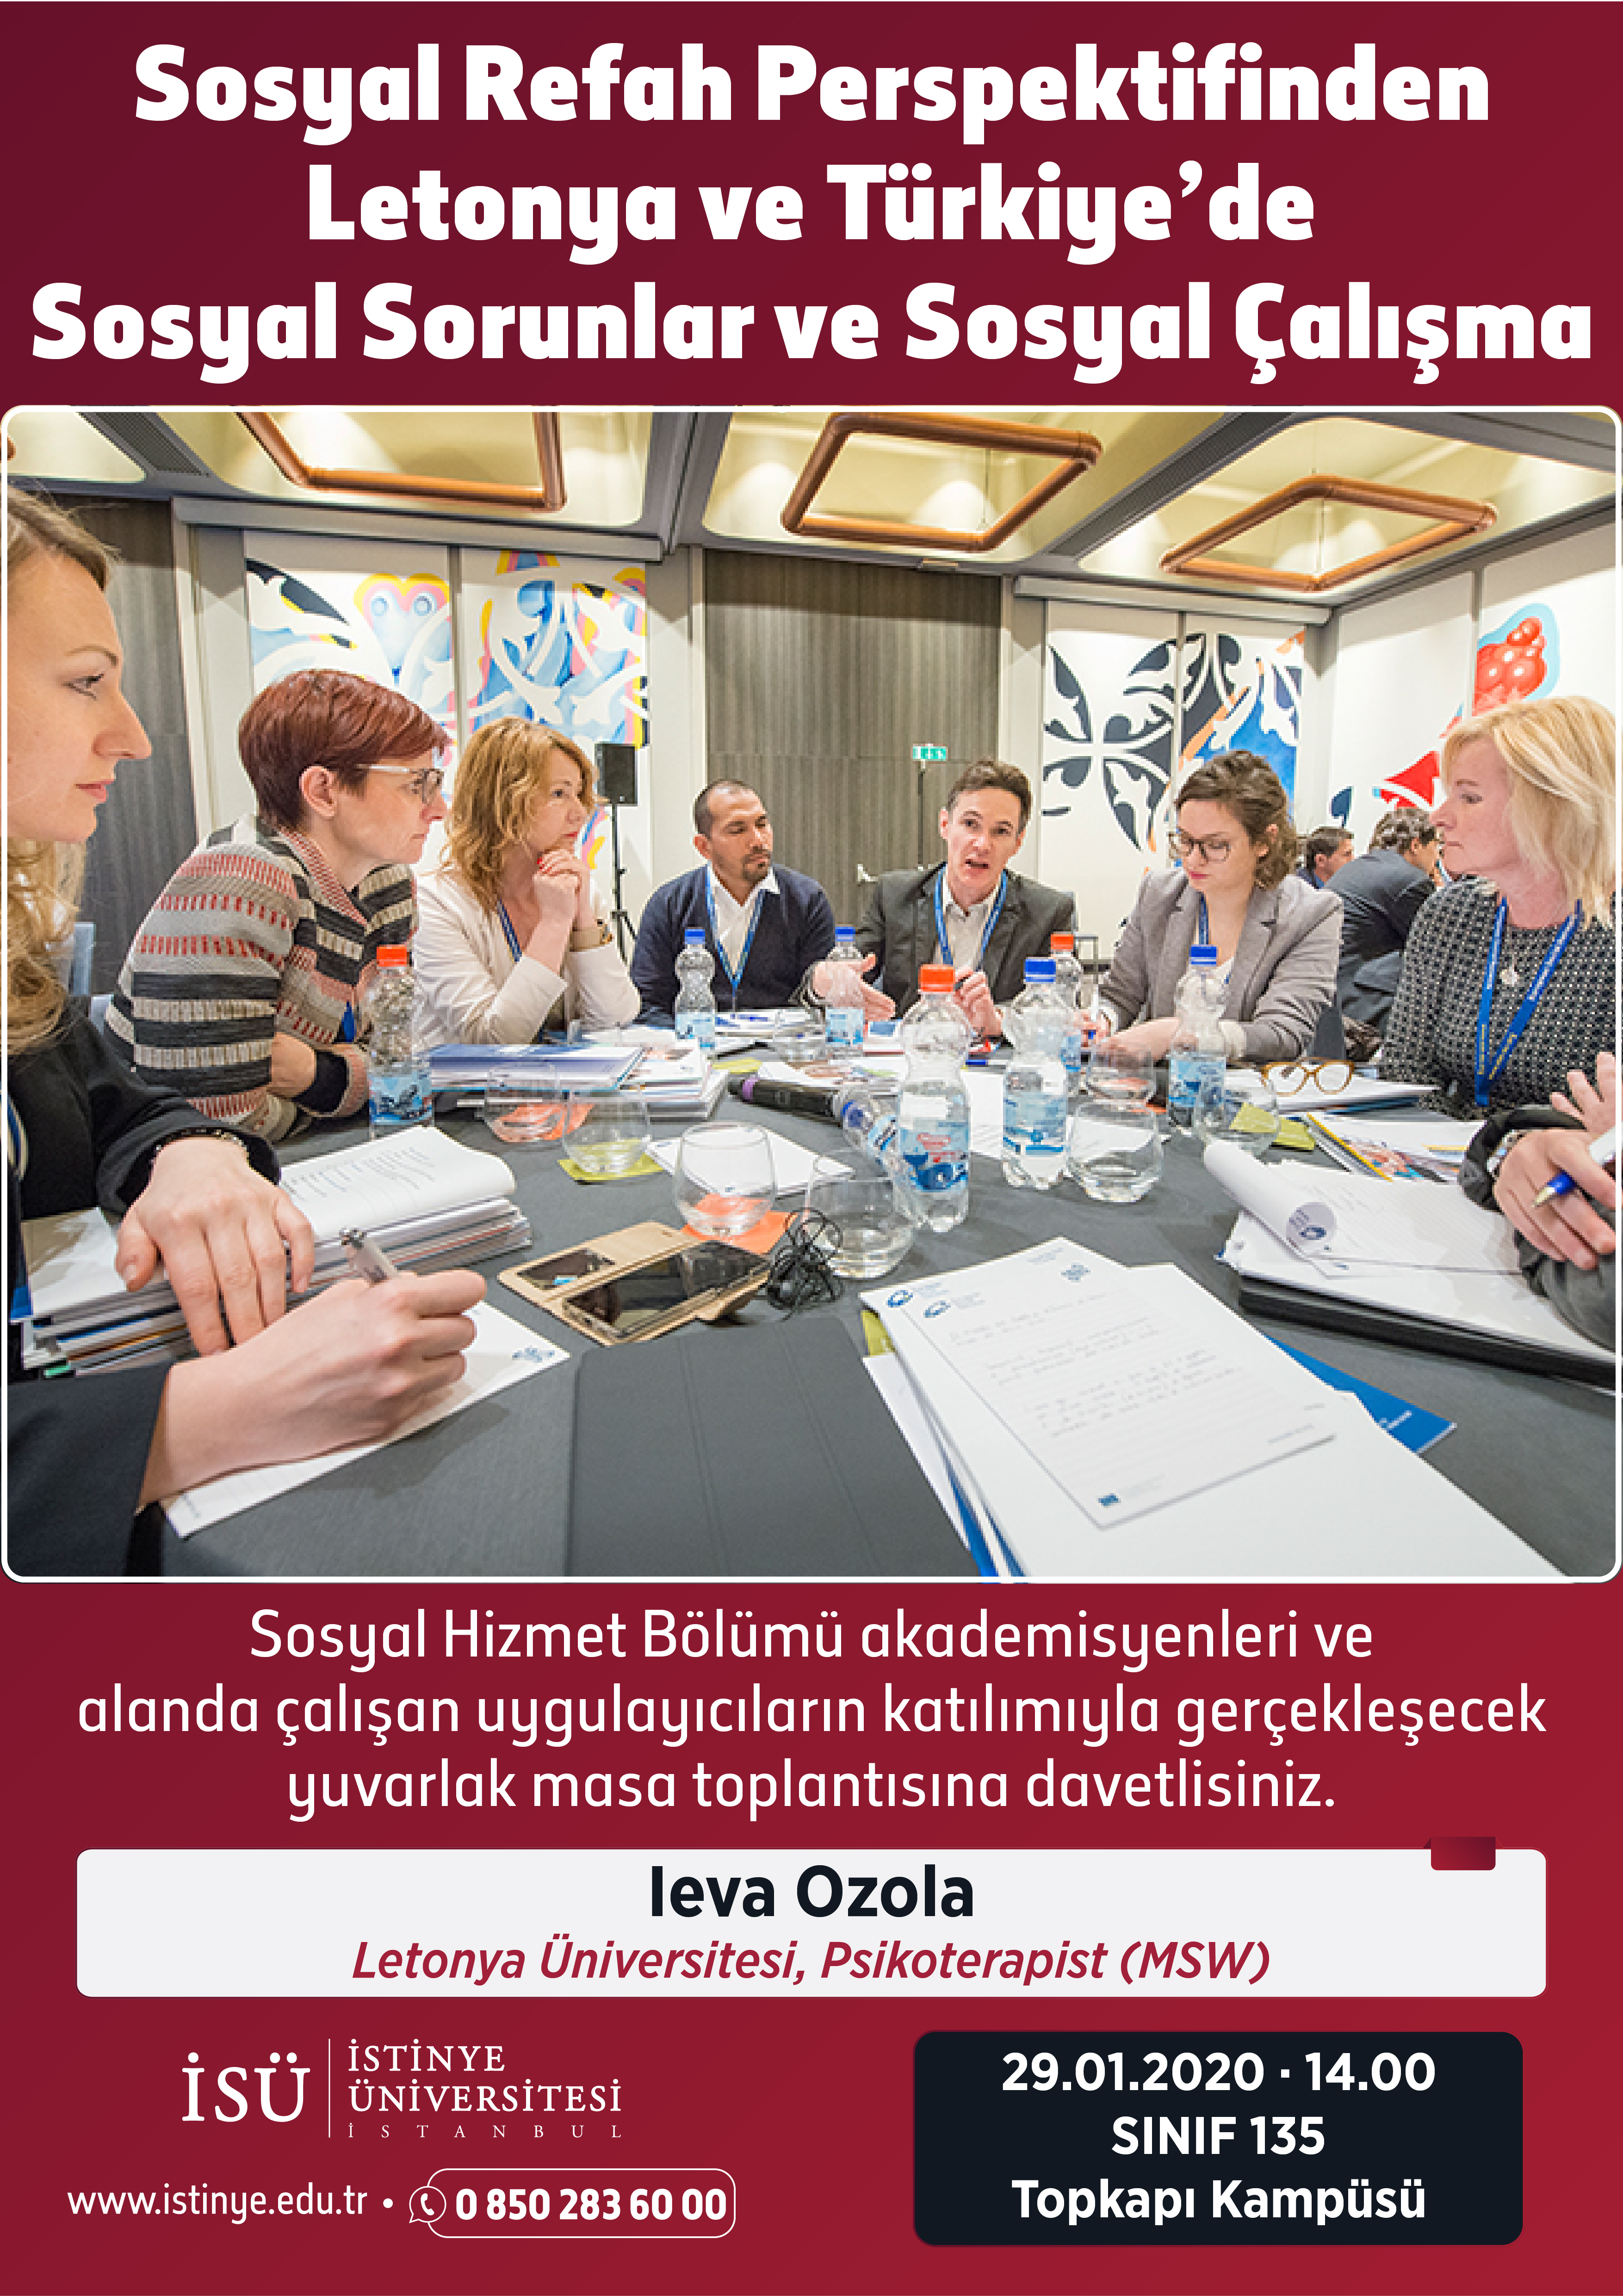 Sosyal Refah Perspektifinden Letonya ve Türkiye'de Sosyal Sorunlar ve Sosyal Çalışma